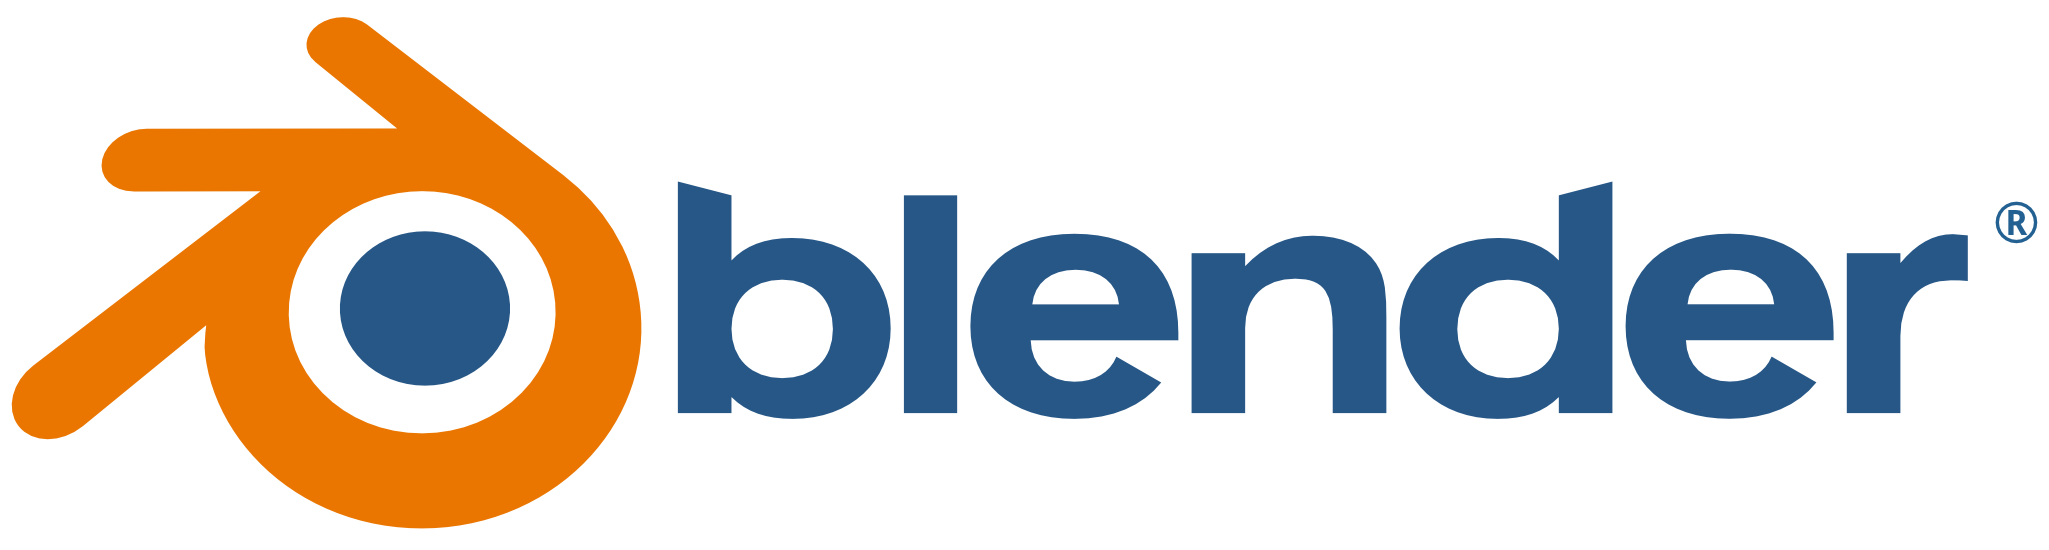 The Blender logo.